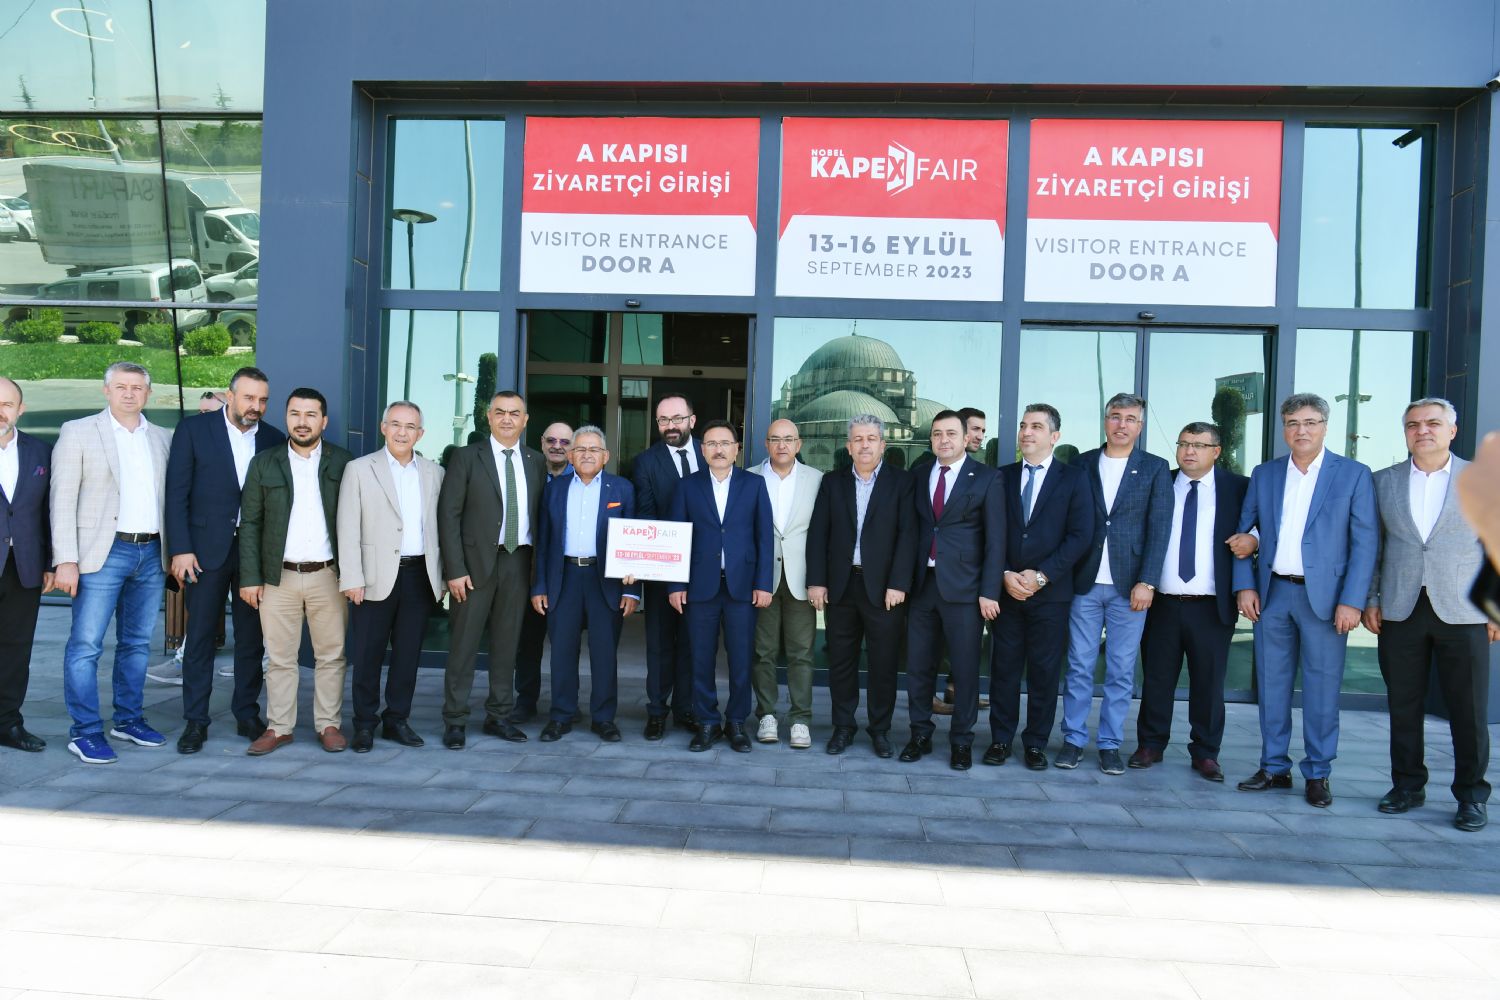  Kayseri OSB Başkanı Mehmet Yalçın ve Yönetimi KAPEX Fuarı açılışına katıldı